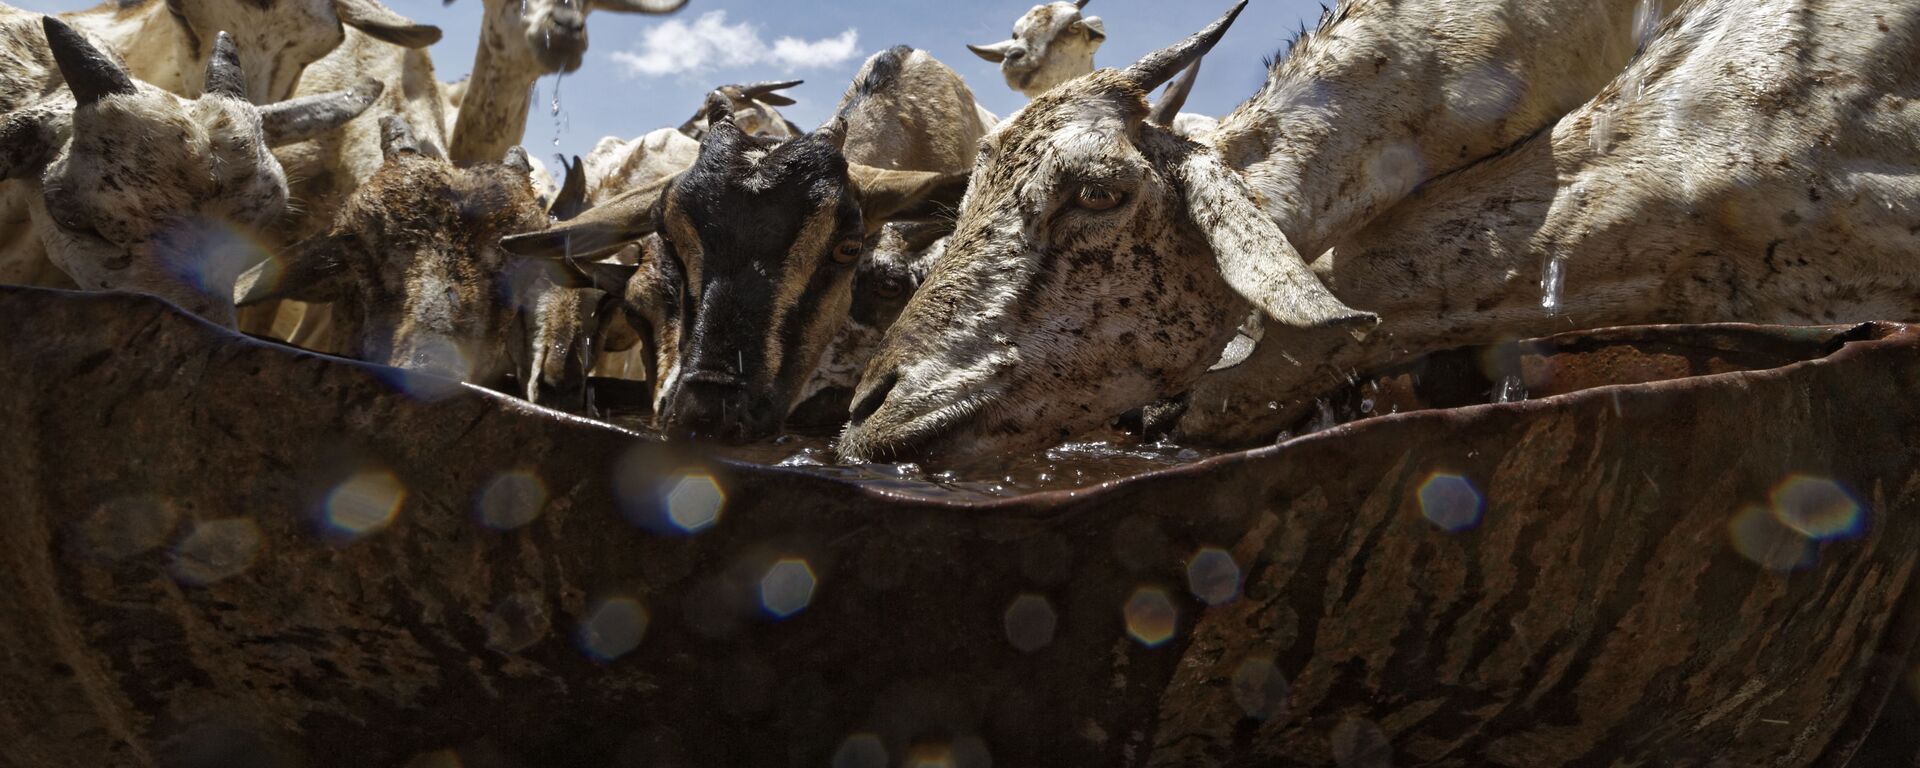 الماعز يندفع لشرب من وعاء معدني، بعد أن تم إحضار المياه من قبل في ناقلة للرعاة في منطقة يسودها الجفاف بالقرب من بندر بيلا، الصومال 8 مارس/ آذار 2017 - سبوتنيك عربي, 1920, 27.03.2022